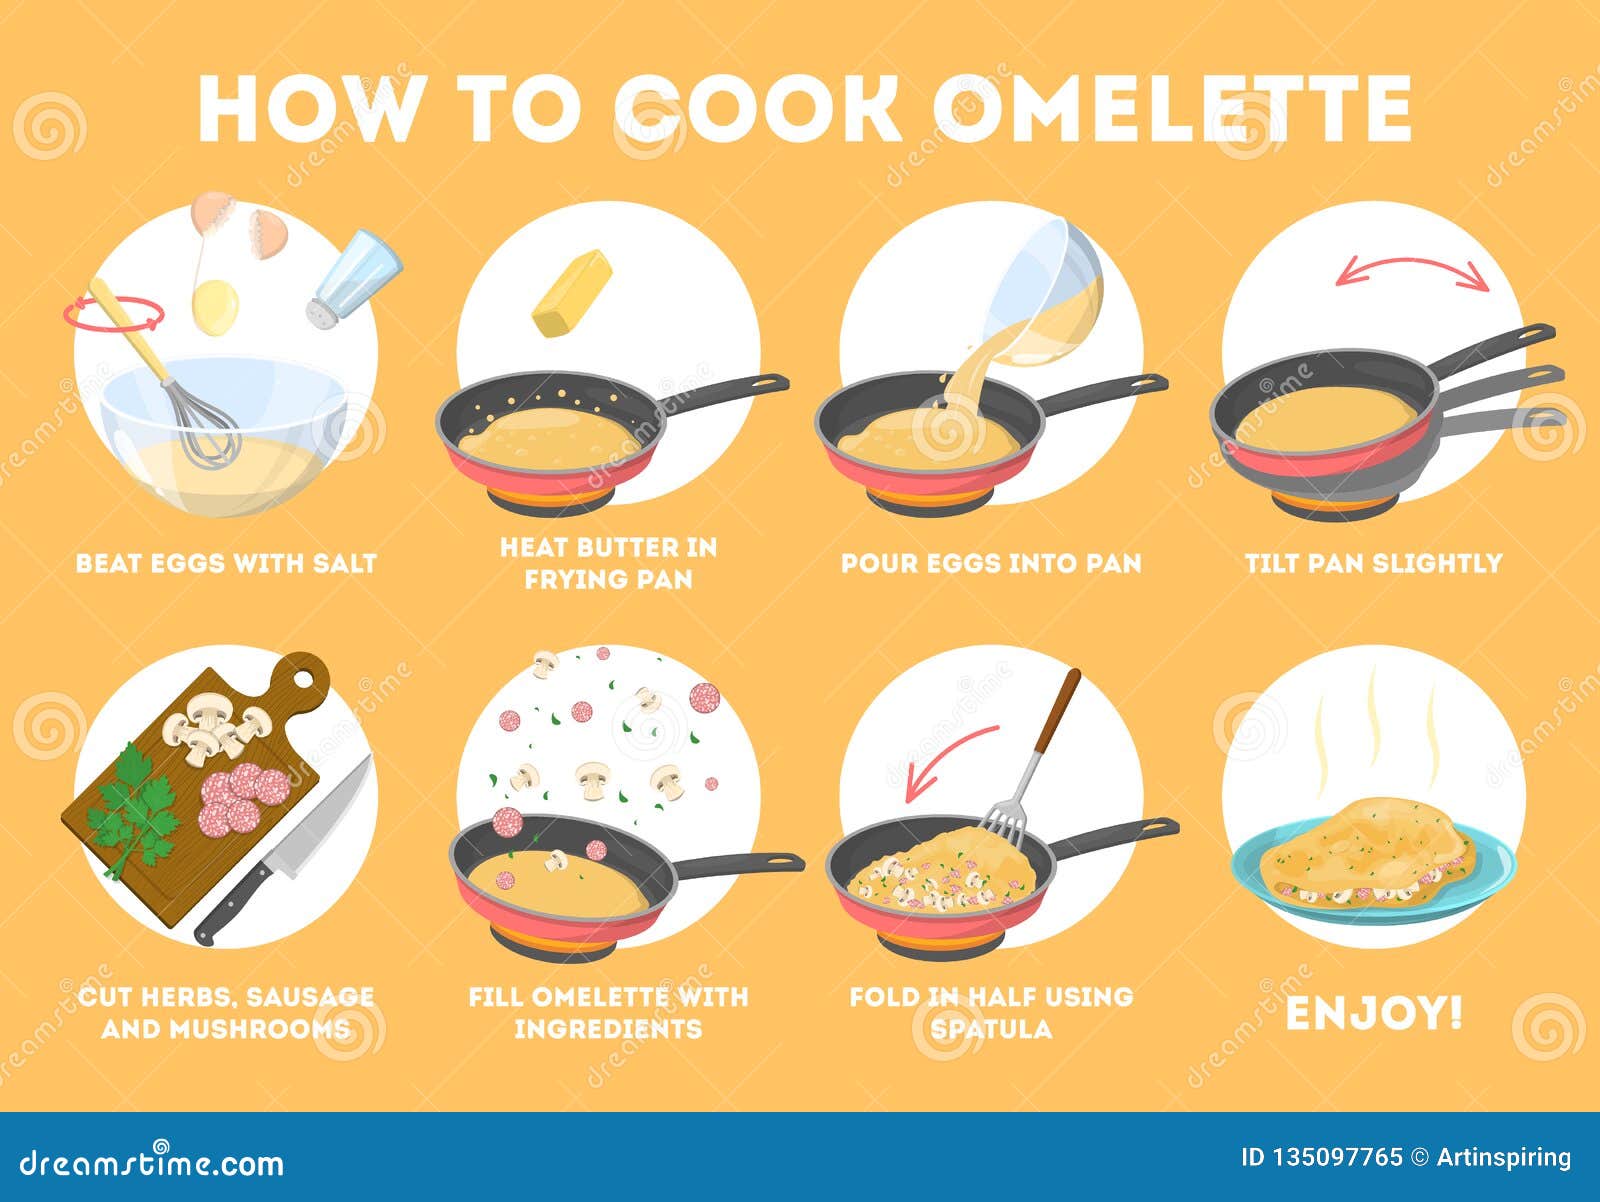 Omelette Faisant Cuire La Recette Petit Dejeuner Rapide Et Facile